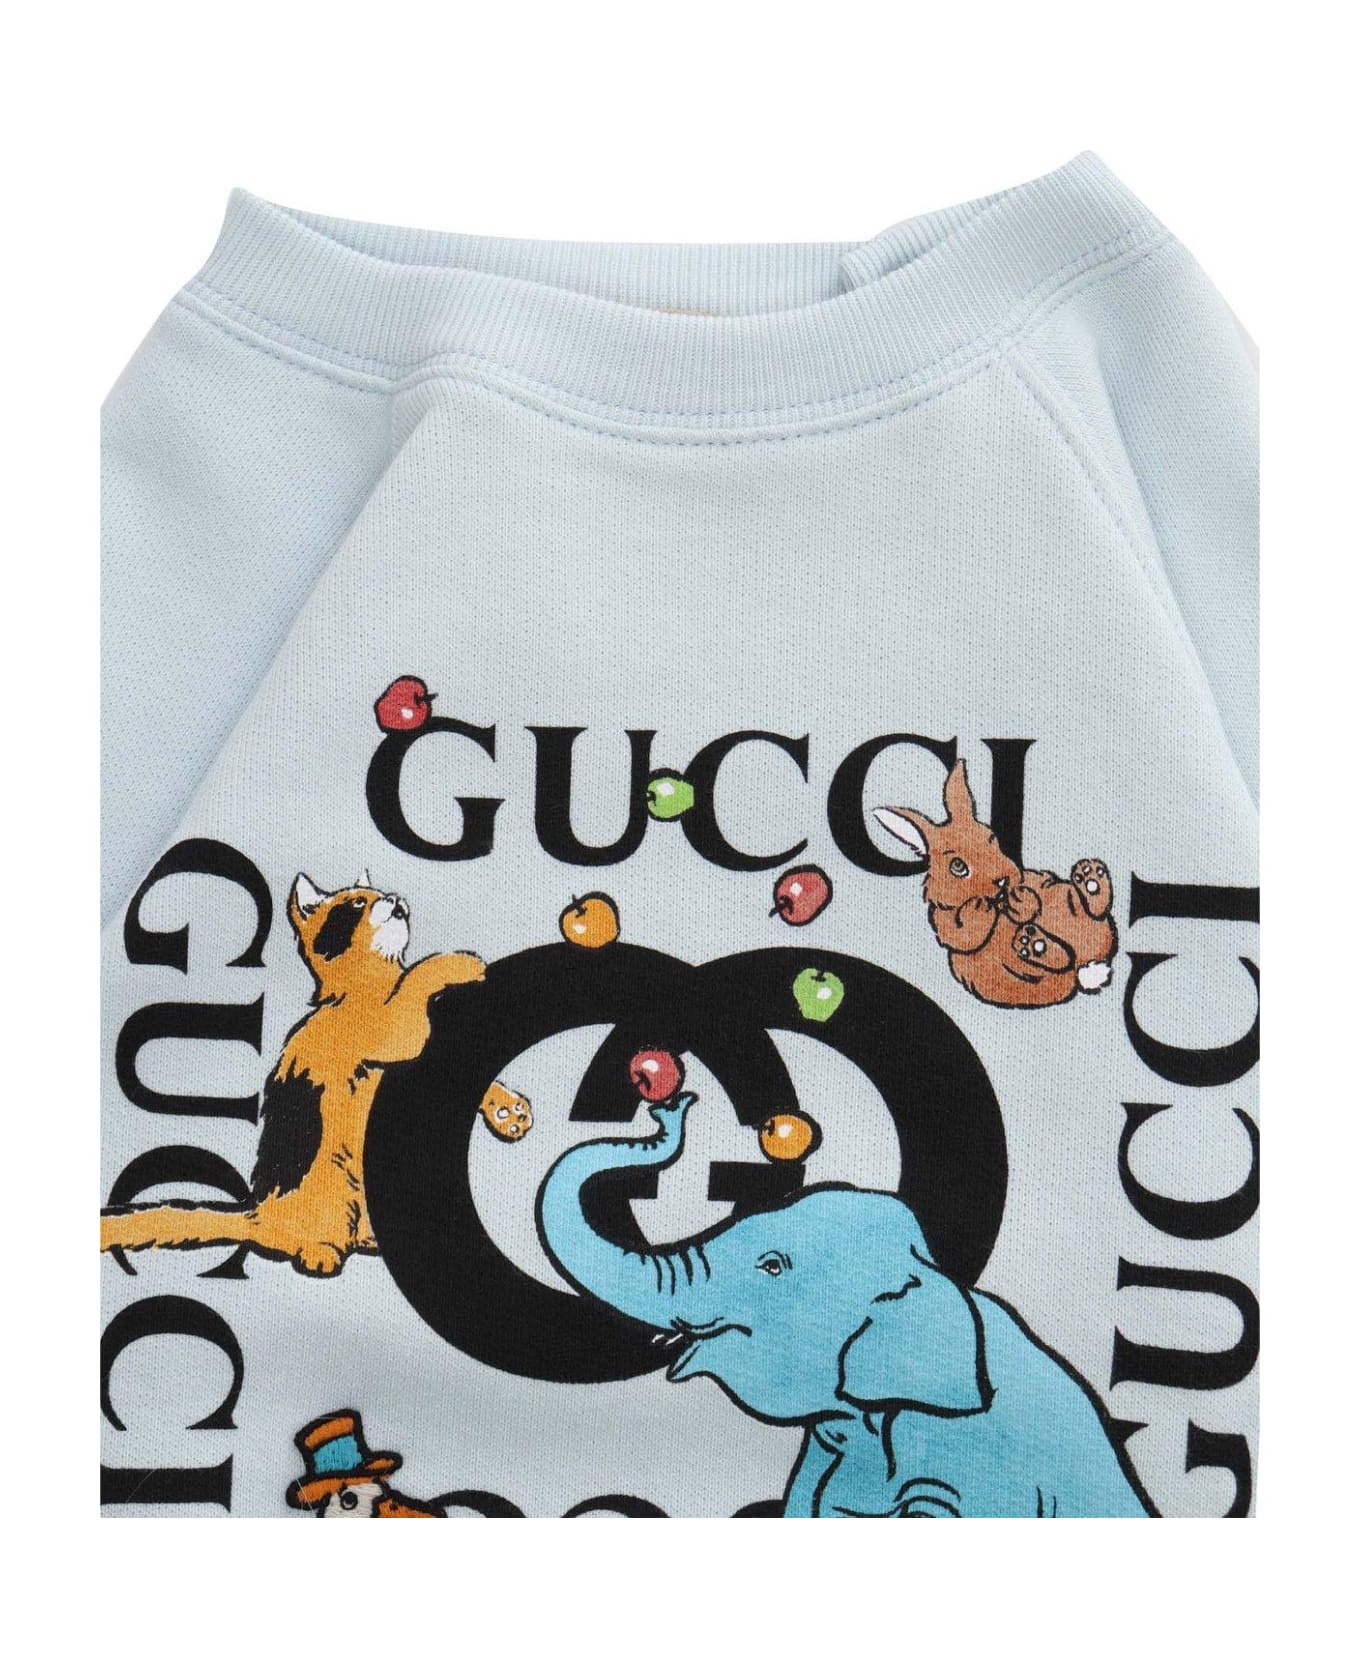 Gucci Animal Logo Printed Crewneck Sweatshirt - Cielo Multicolor